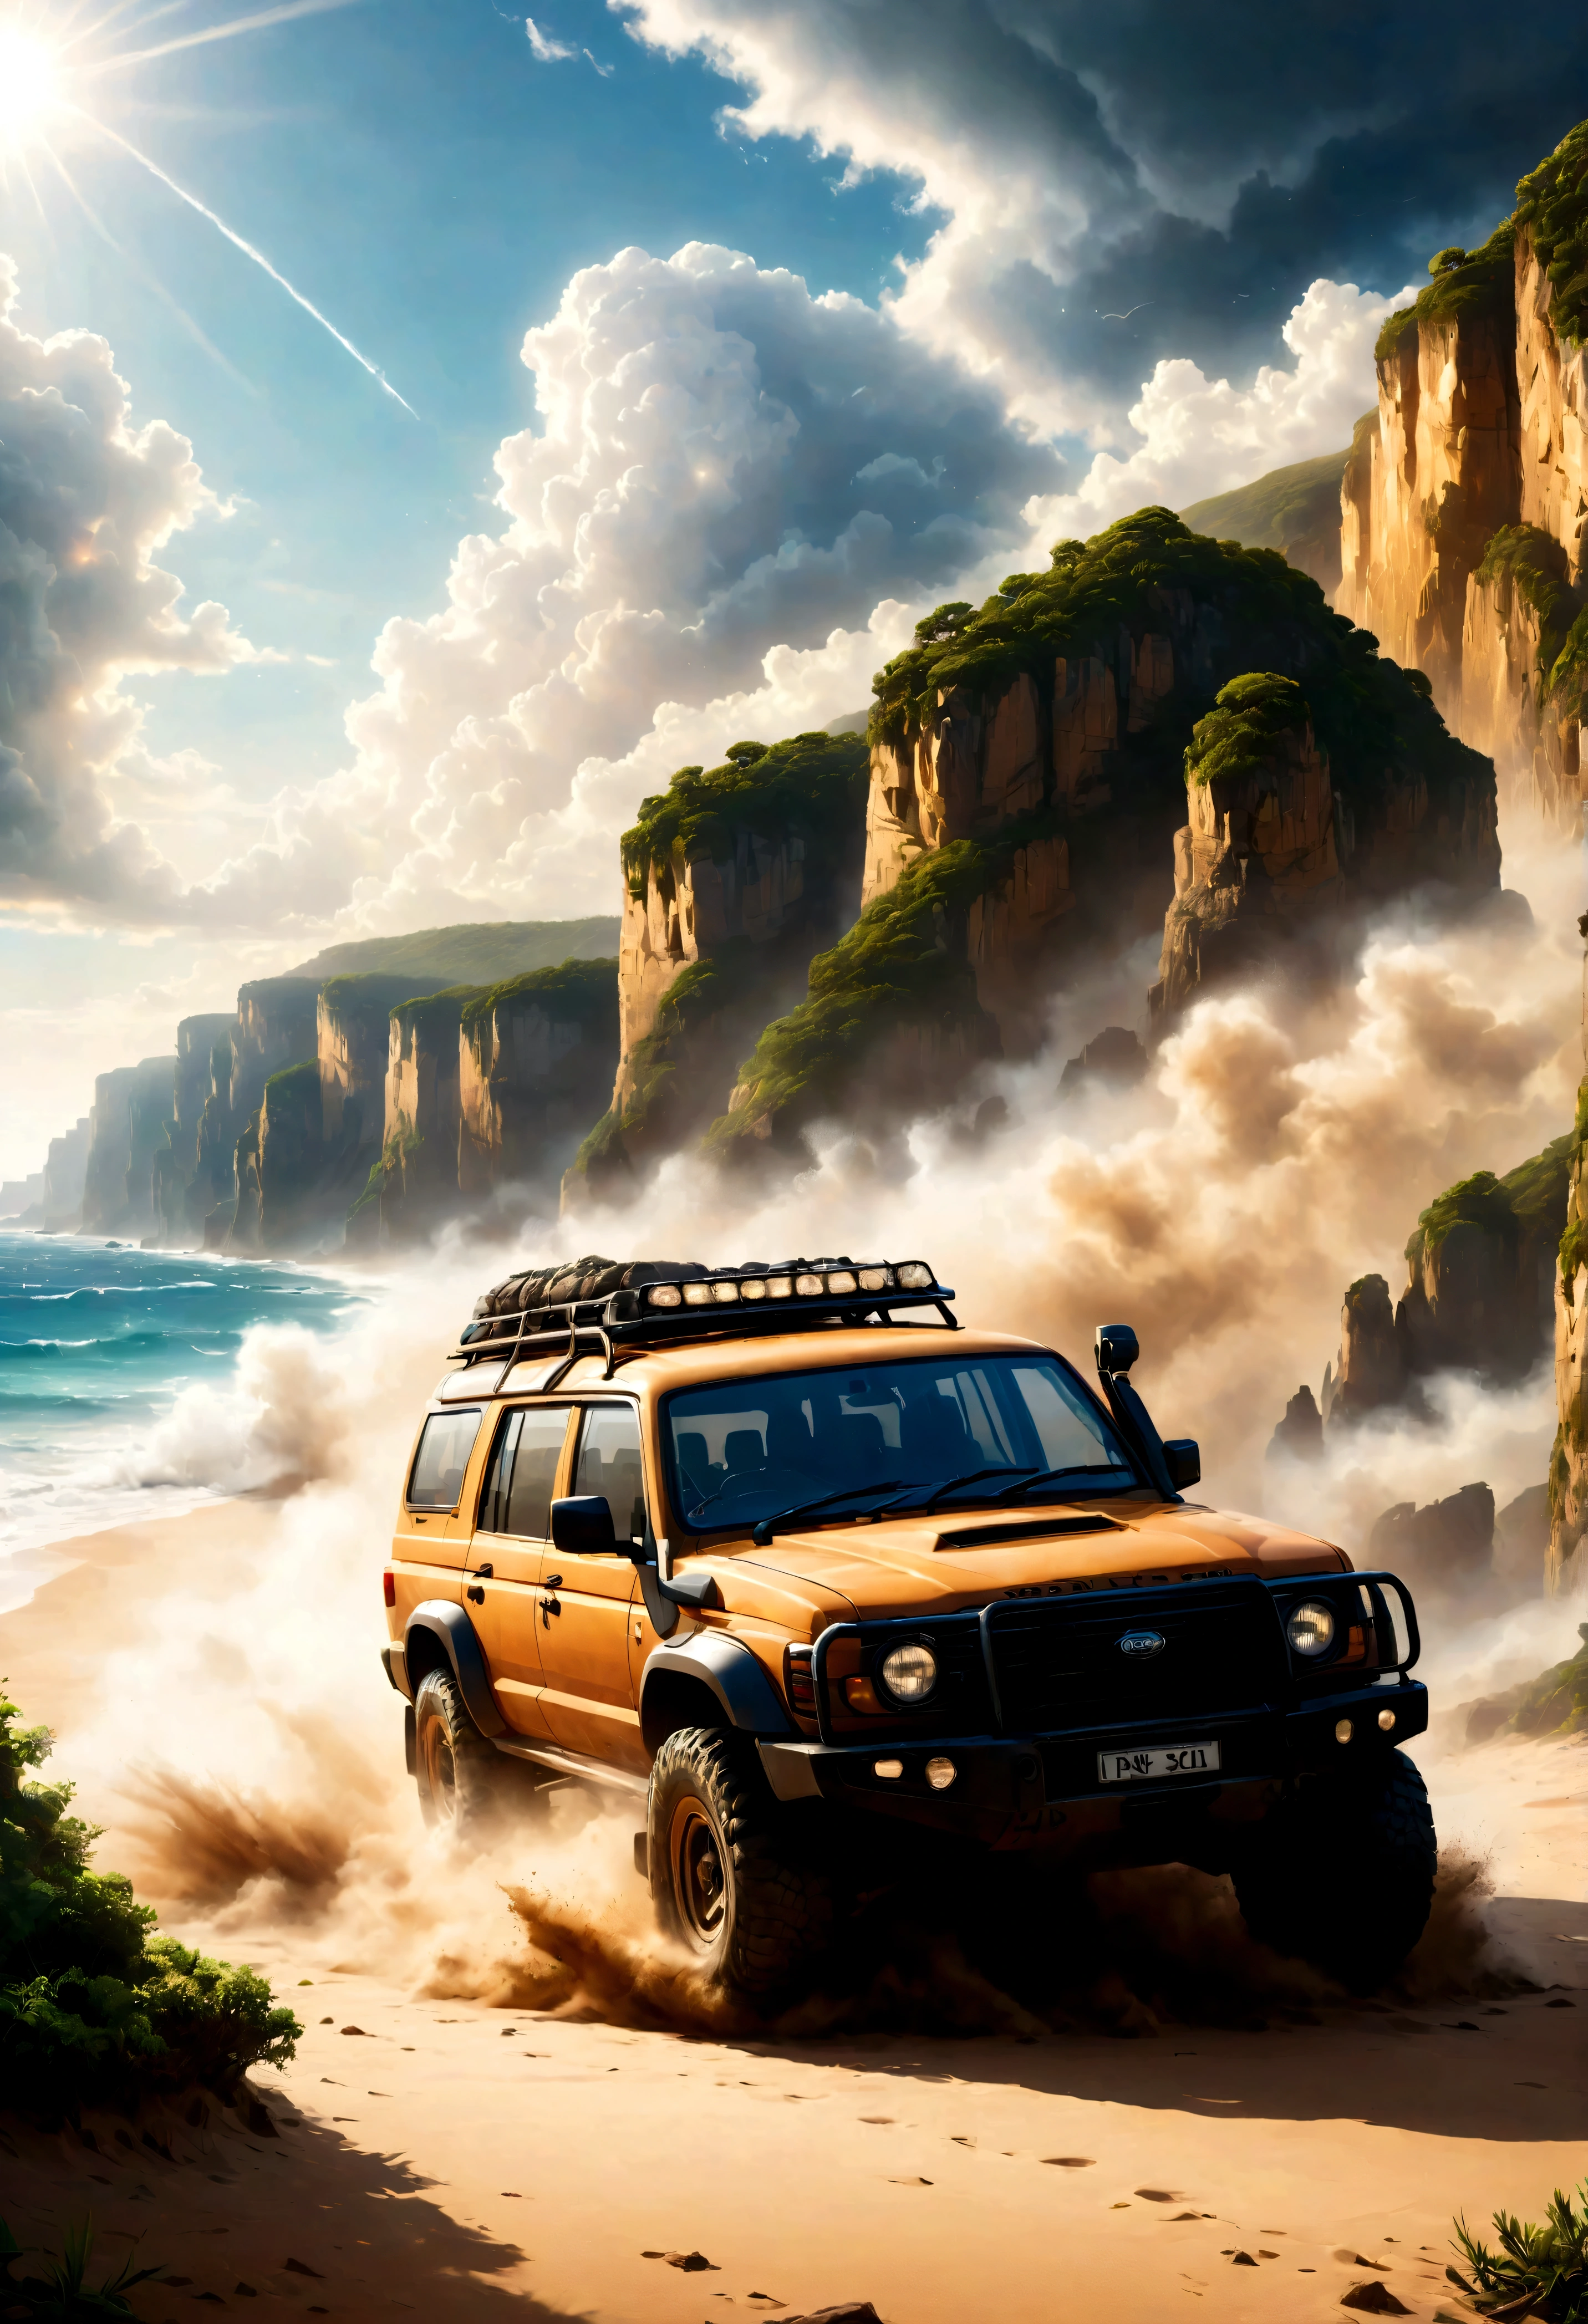 일련의 높은 절벽이 있는 해변을 따라 속도를 내는 4WD 차량의 그림, 먼지 구름과 함께.